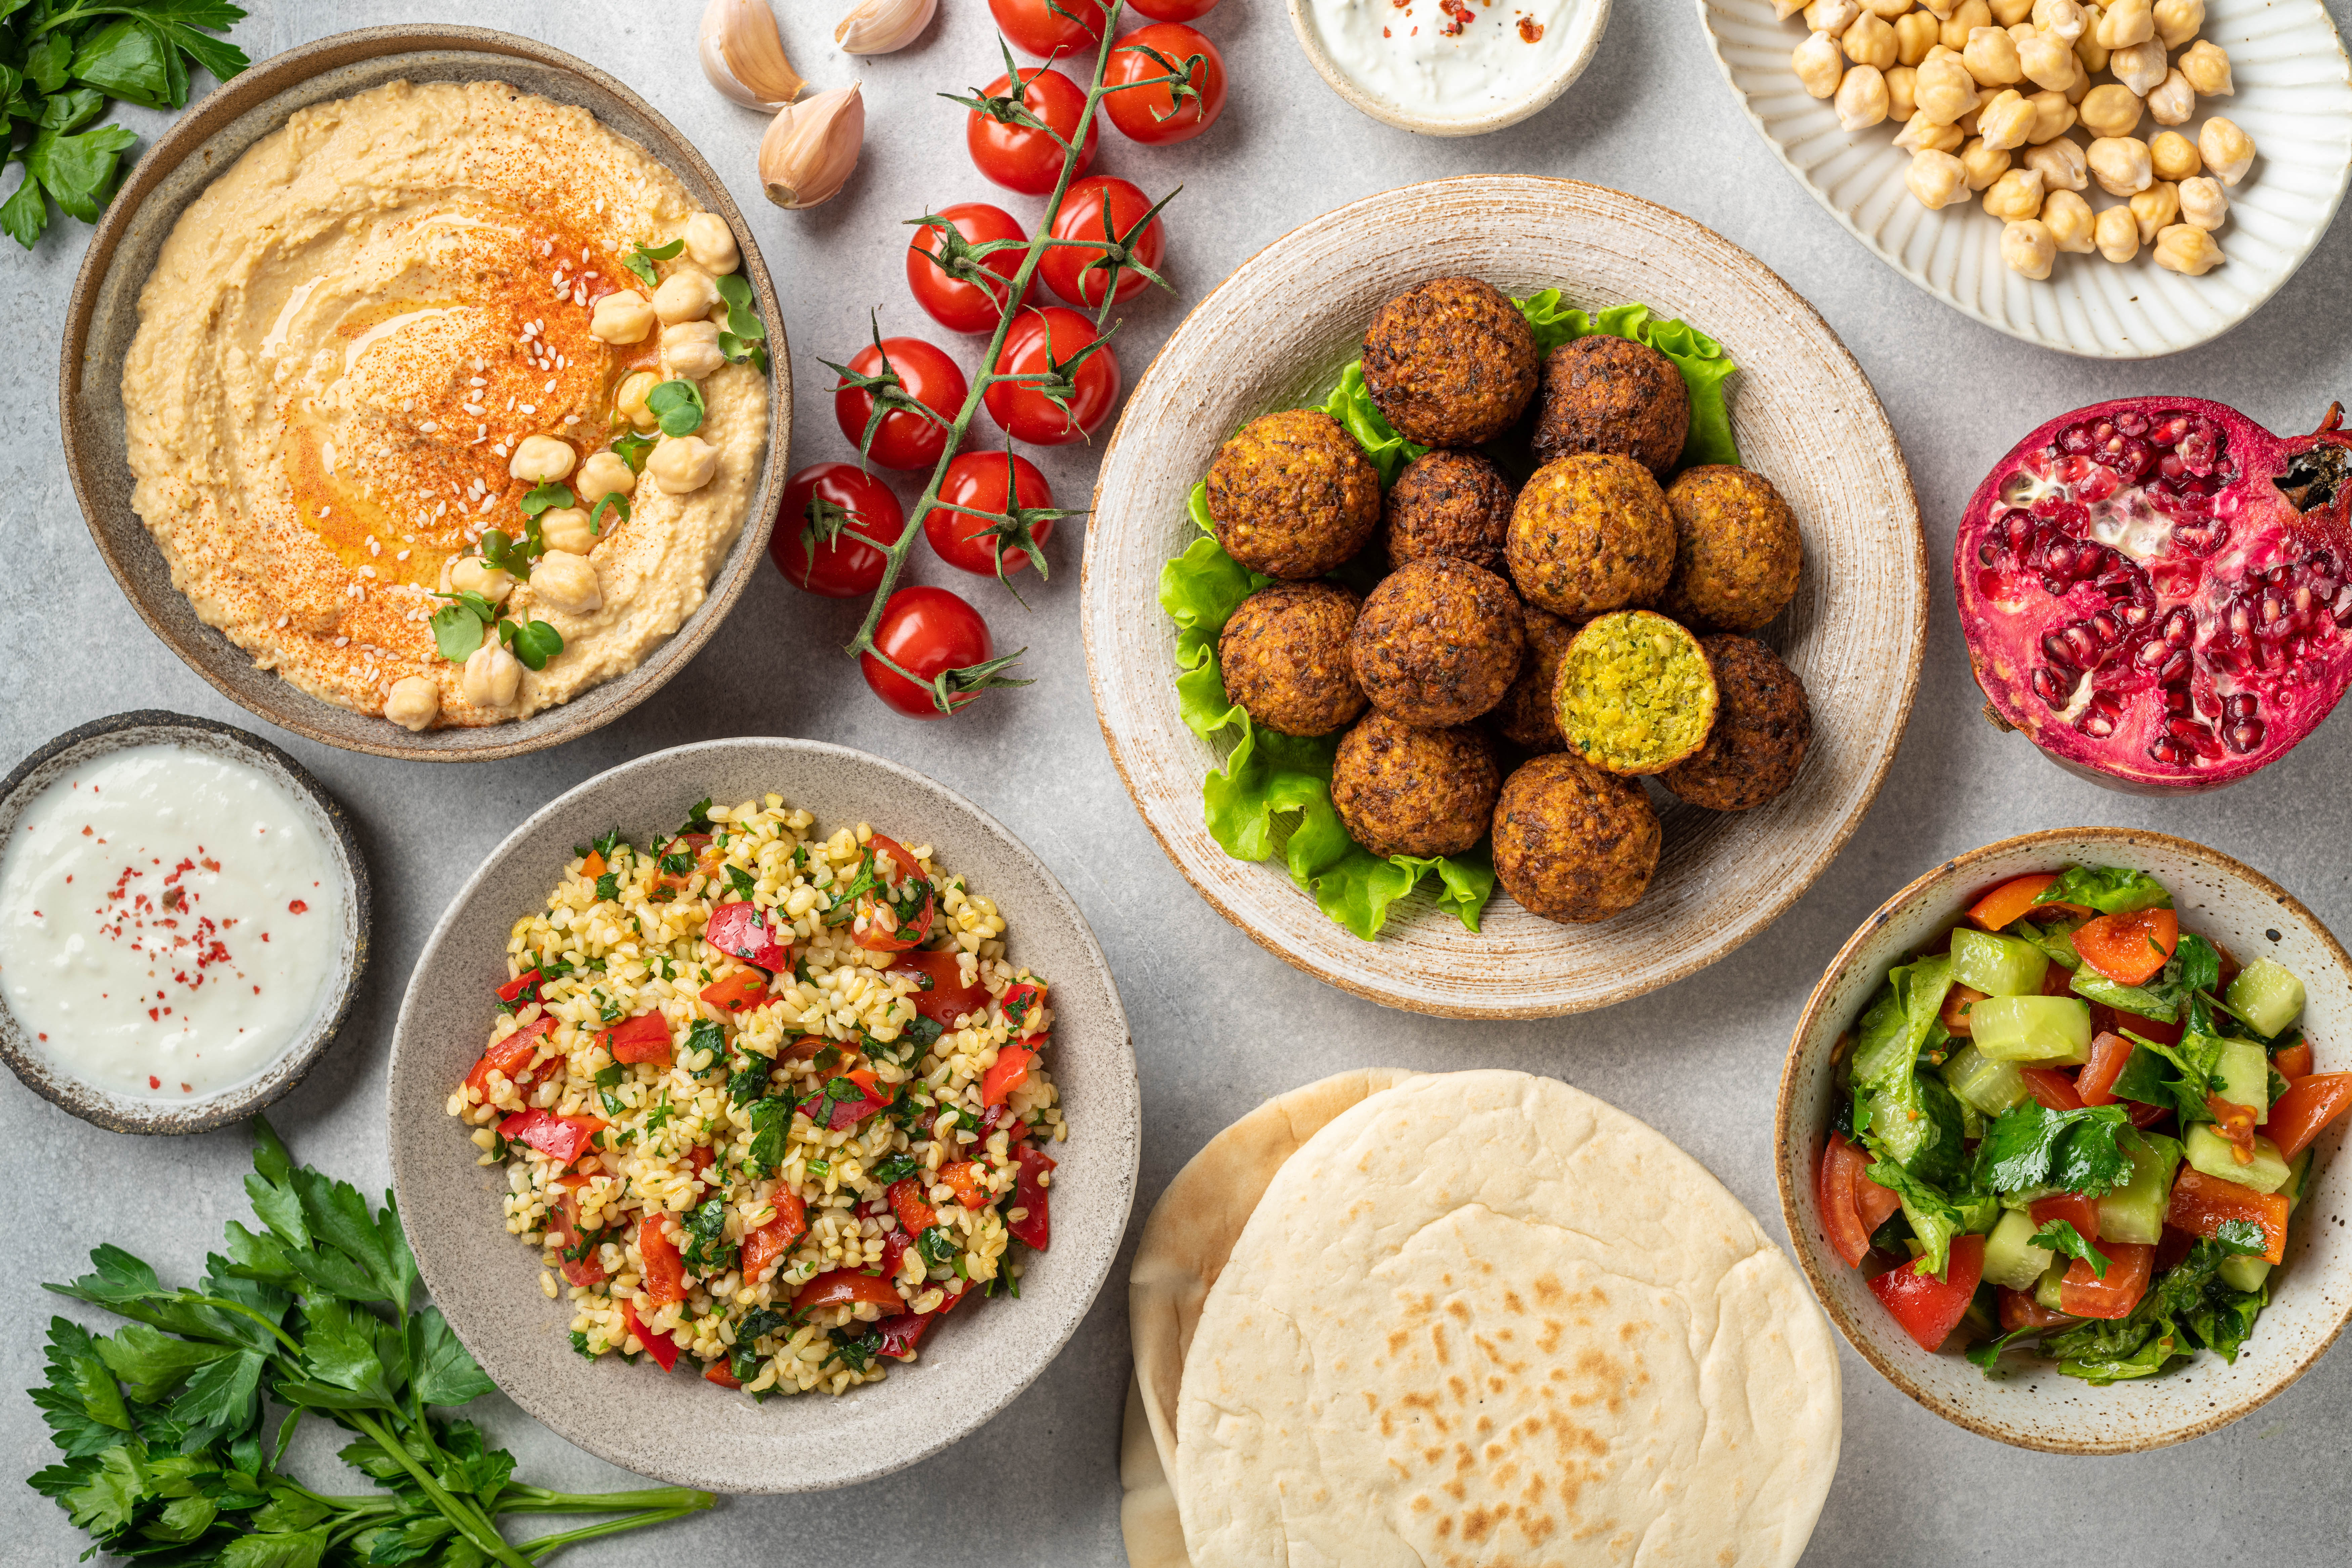 Рецепты с фото арабская кухня